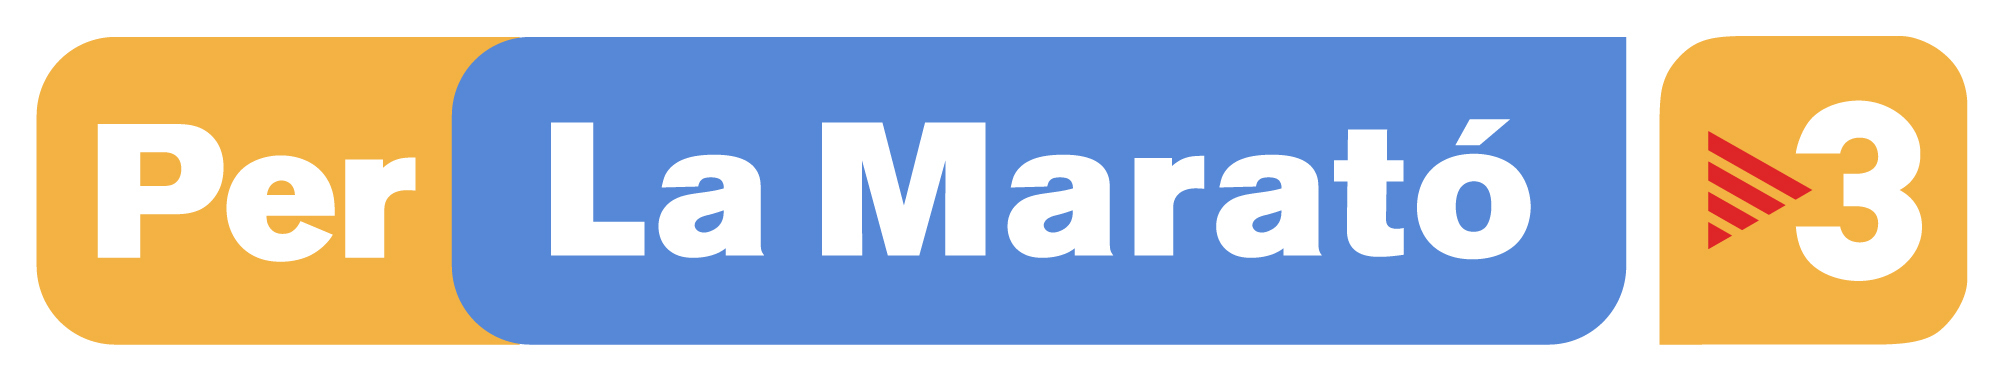 Logo Per La Marato